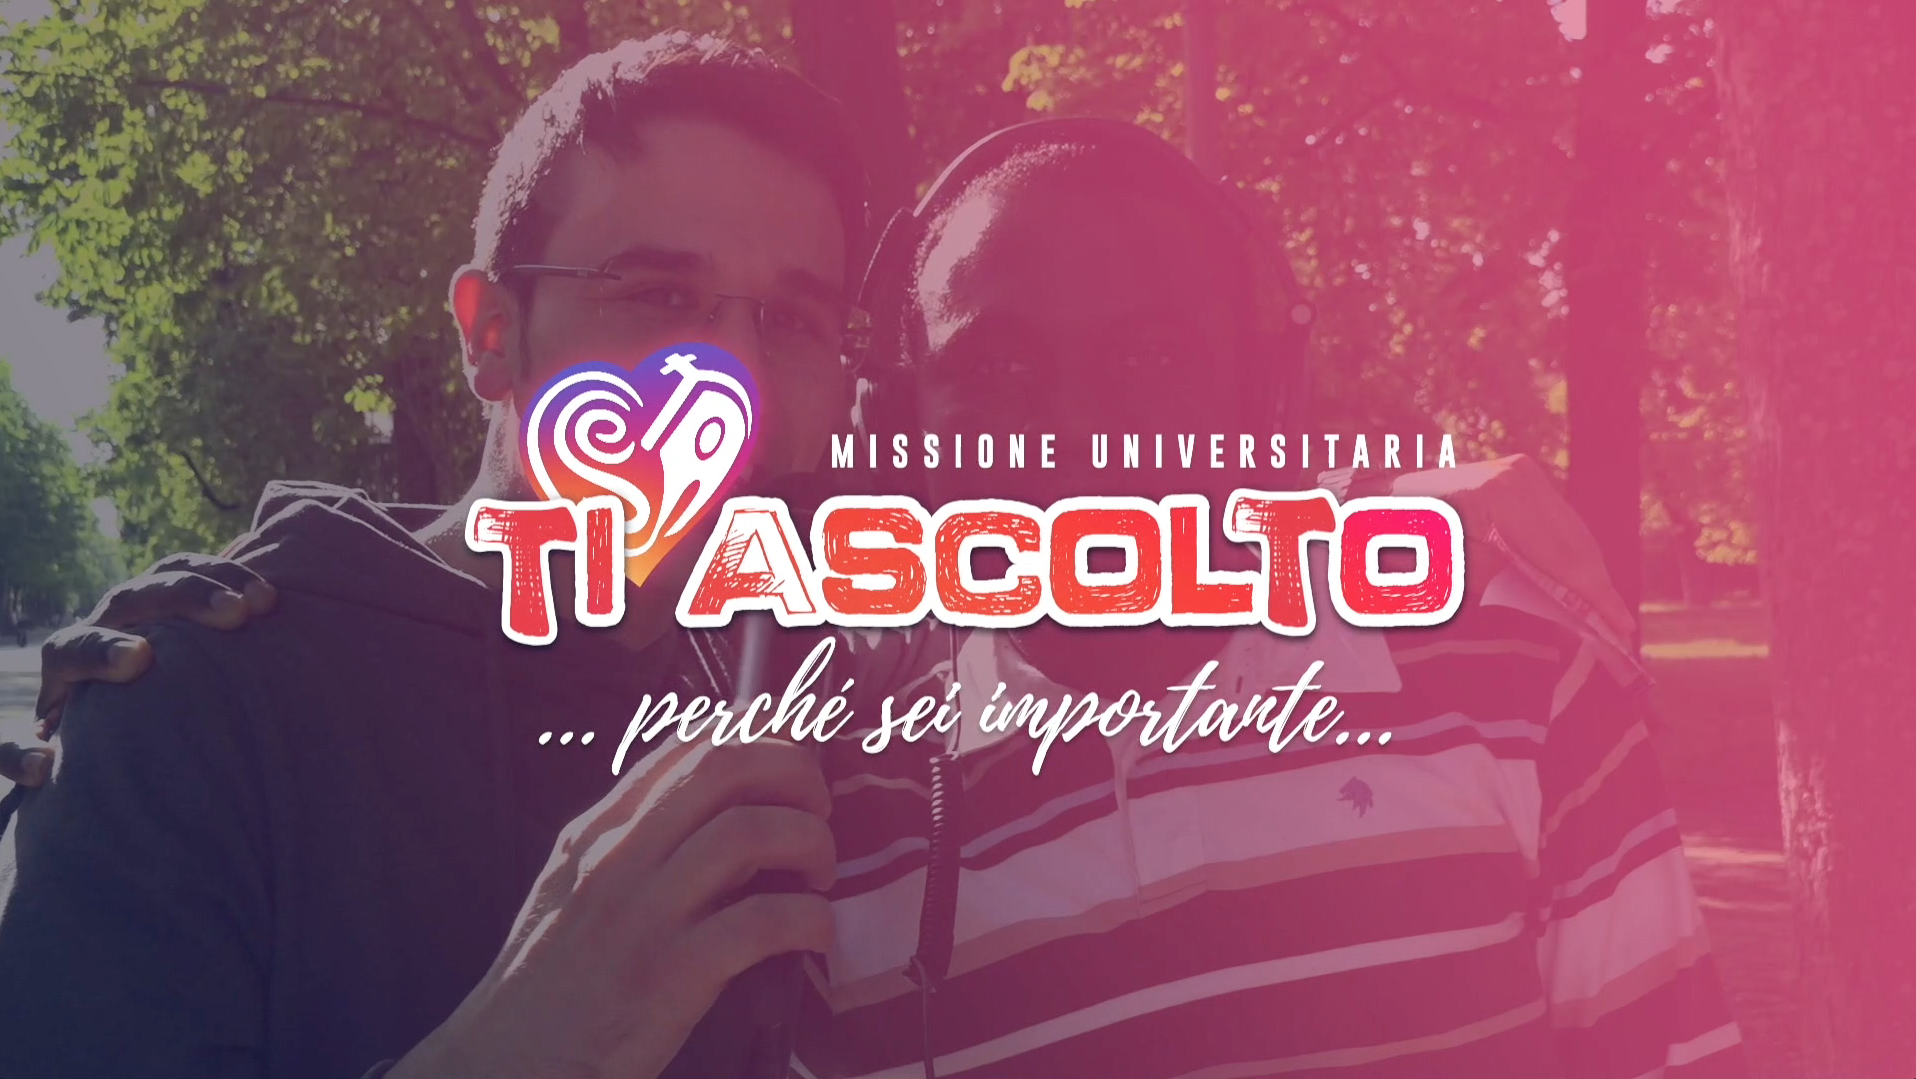 SPOT - #TiAscolto Missione Universitaria 2018